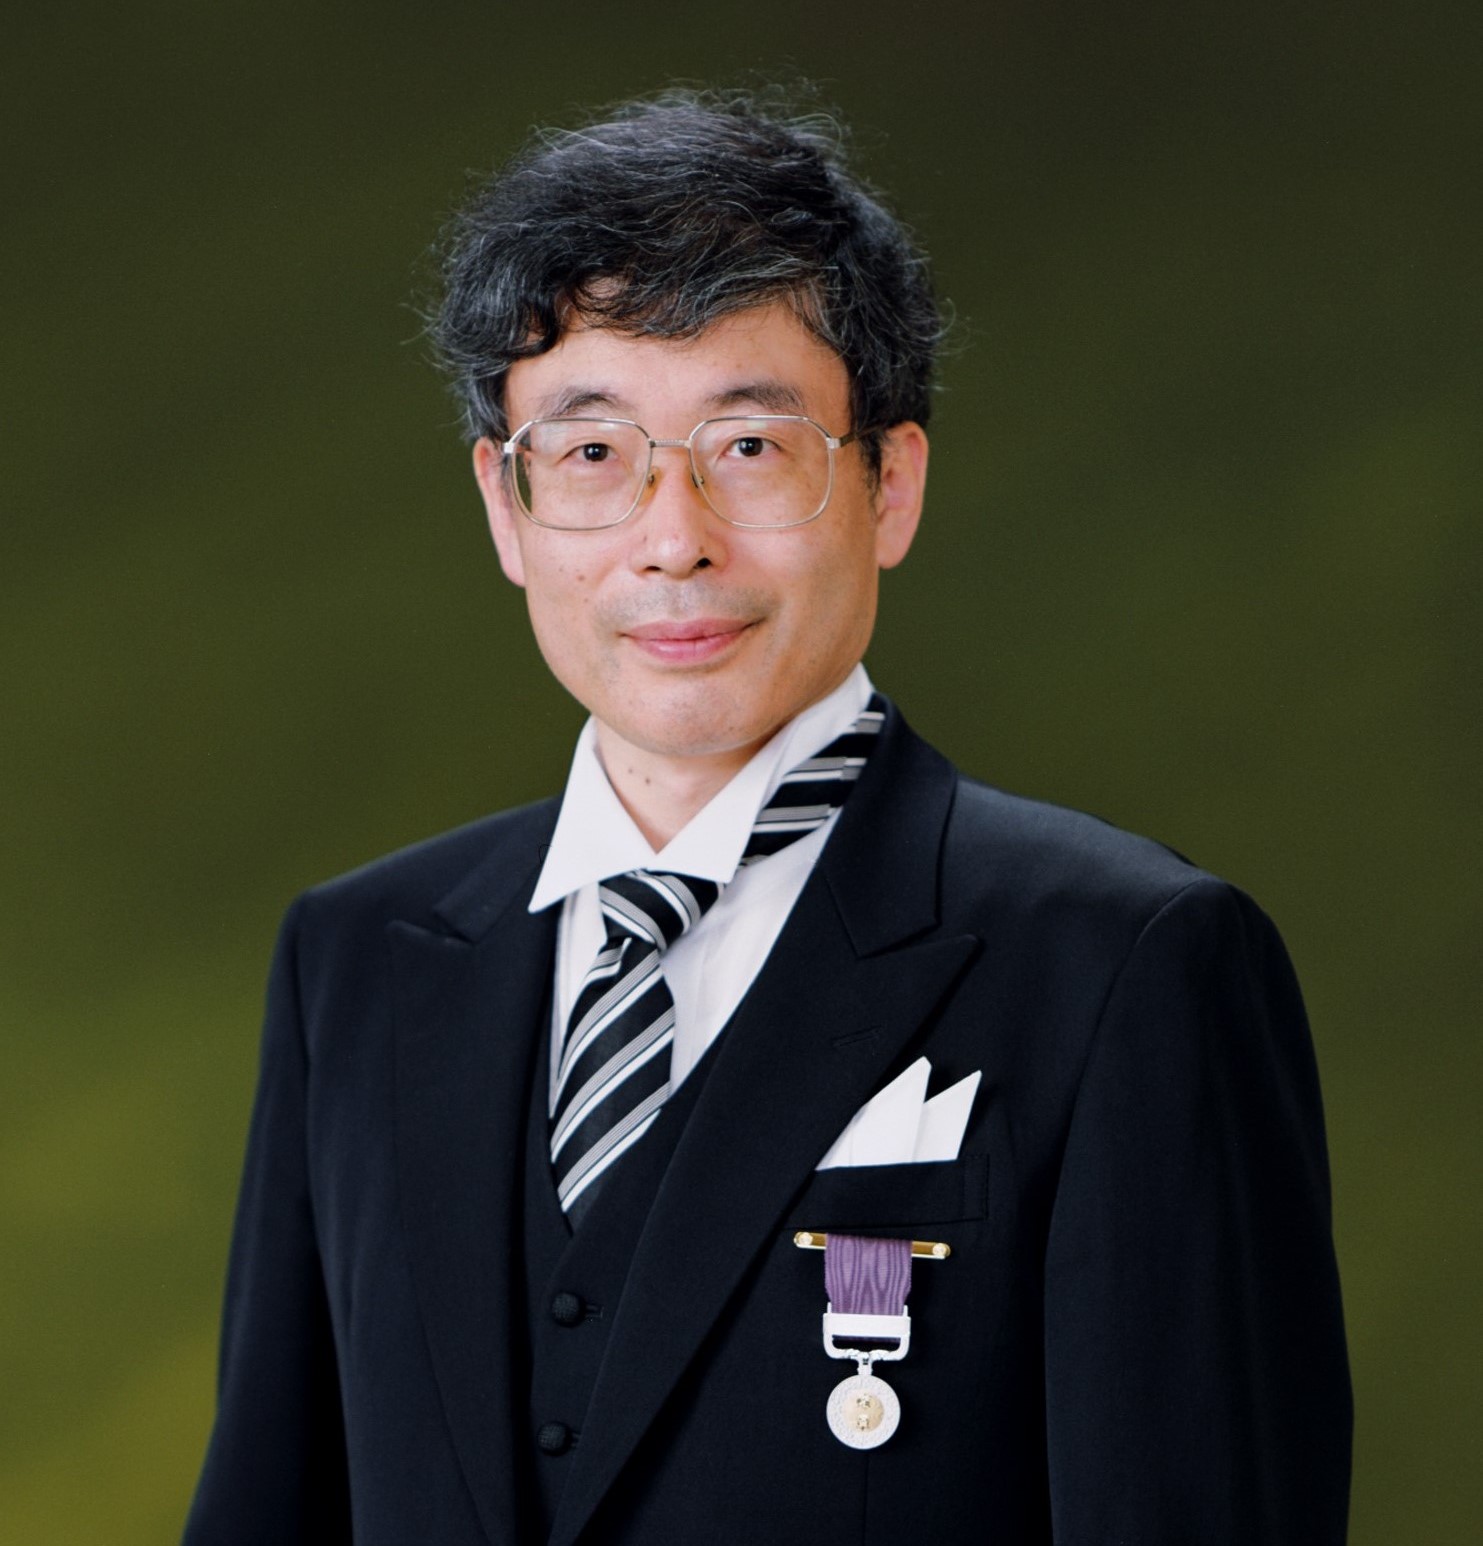 2022年6月10日、大学院数理科学研究科の小林俊行教授、フランスのランス大学より Doctorat Honoris Causa (名誉博士号)を授与